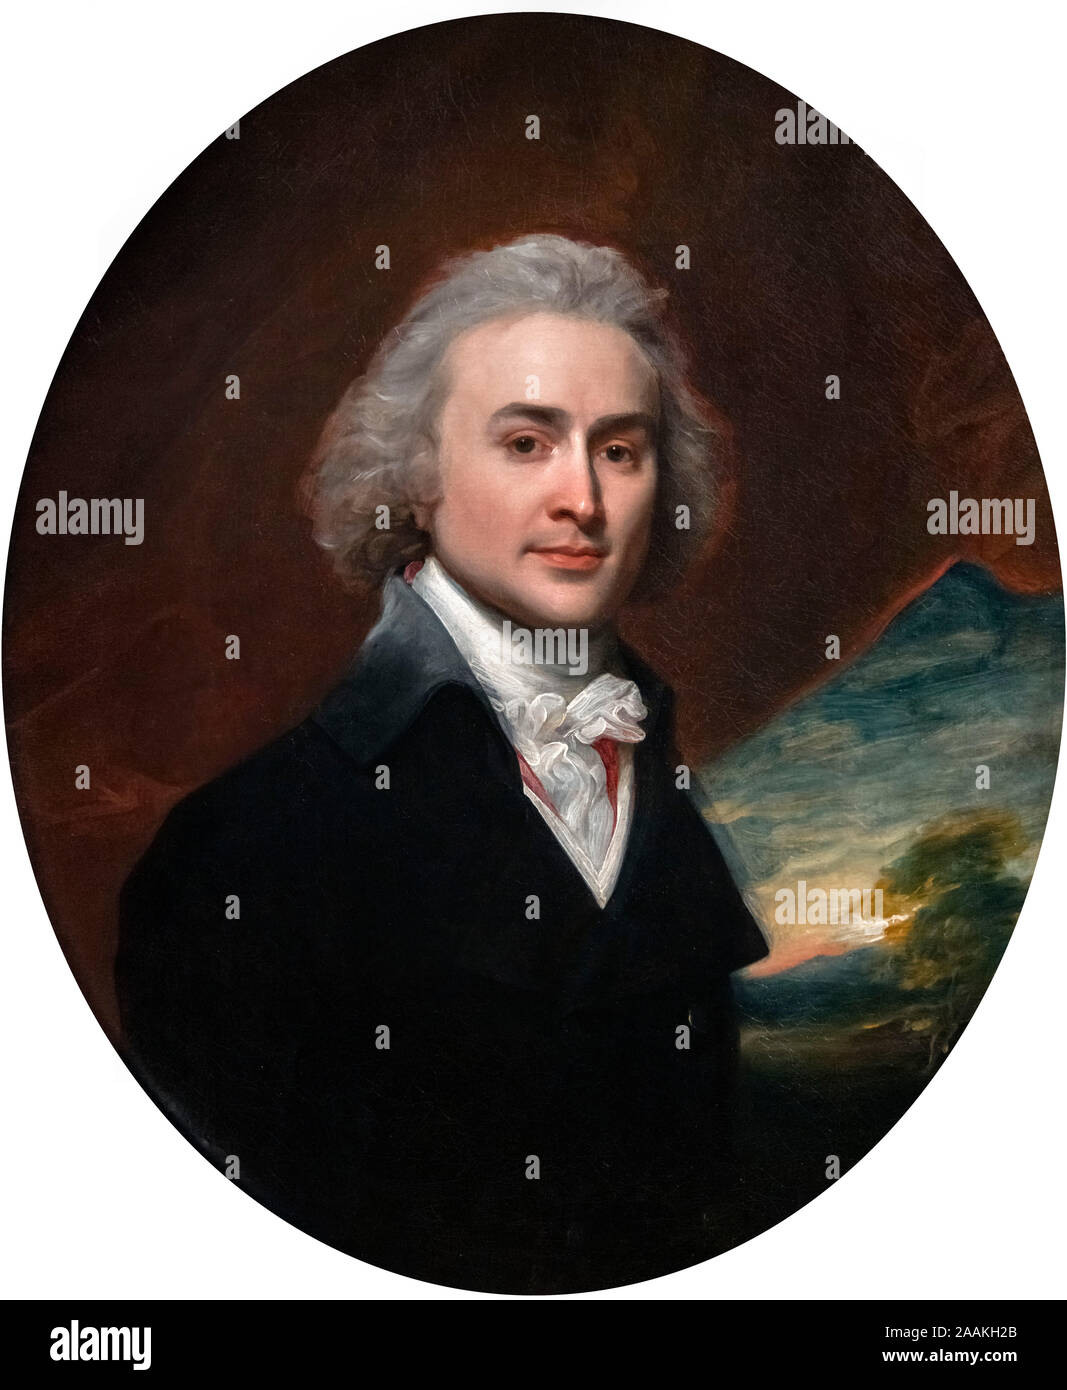 John Quincy Adams (1767-1848) a la edad de 28. Retrato del 6º Presidente de los EE.UU. como un hombre joven de John Singleton Copley (1738-1815), óleo sobre lienzo, 1796. Foto de stock